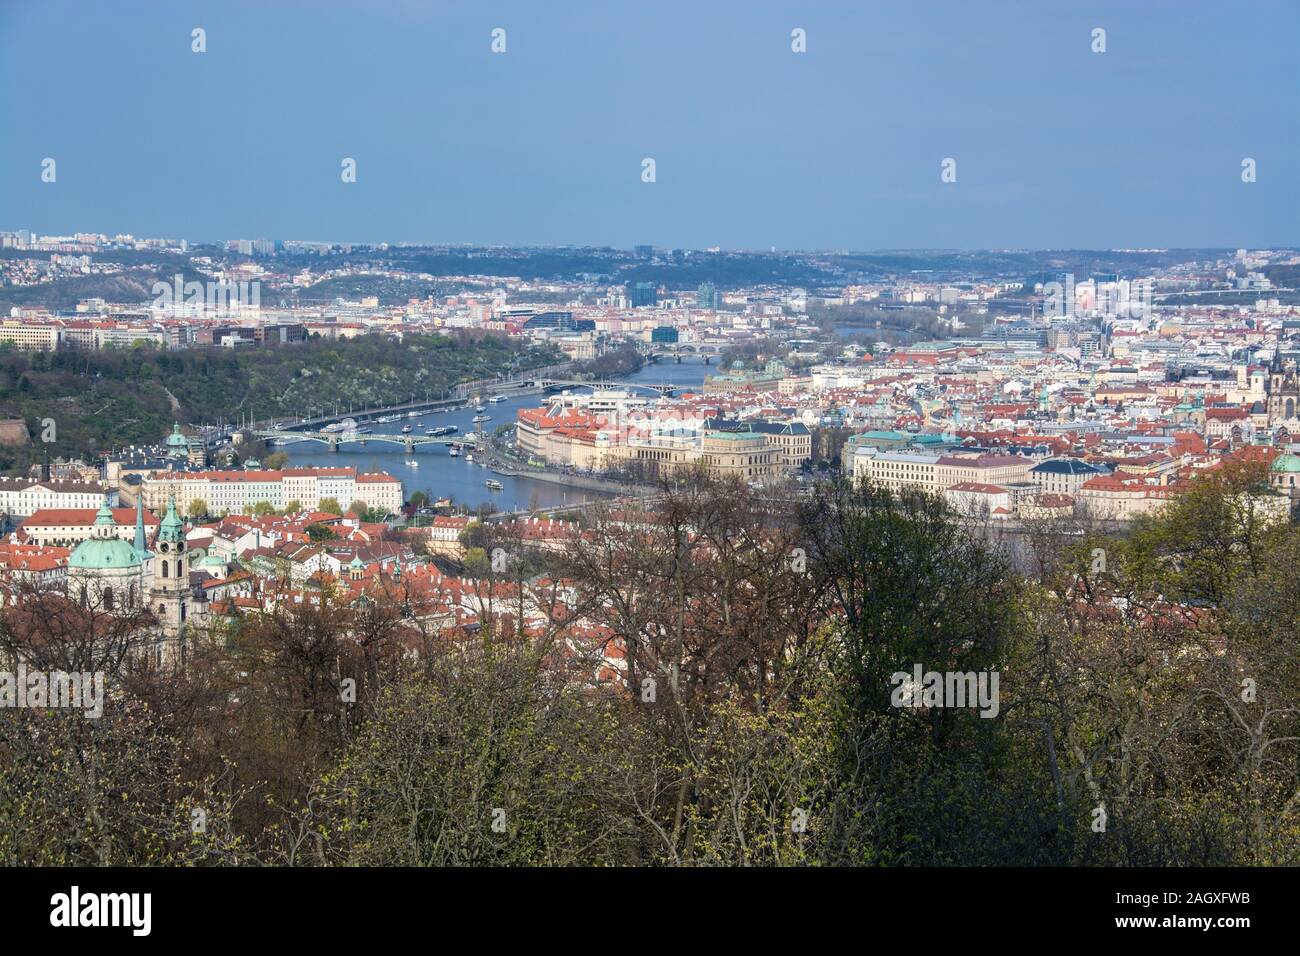 Prag ist die Hauptstadt der Tschechischen Republik und liegt an der Moldau. Die 'Stadt der hundert Tuerme' ist bekannt für den anello Altstaedter mit bu Foto Stock